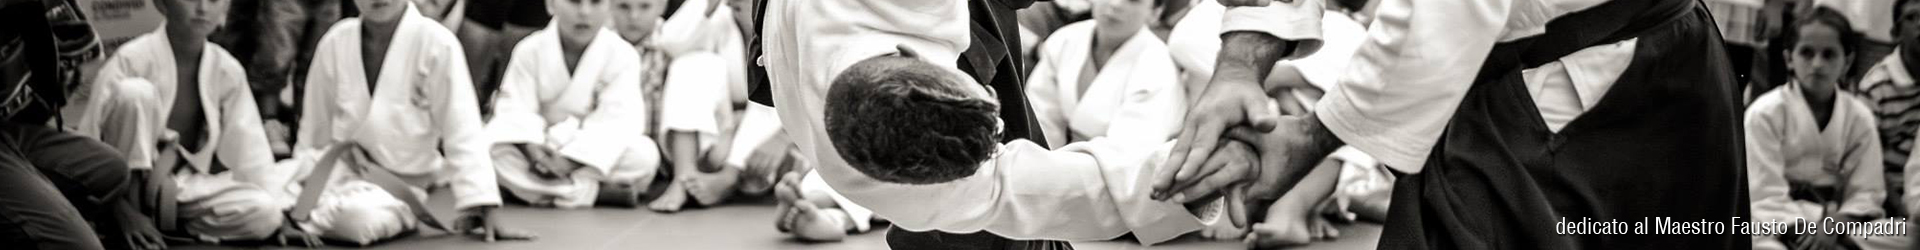 Dal 25 settembre riprendono i corsi di Aikido